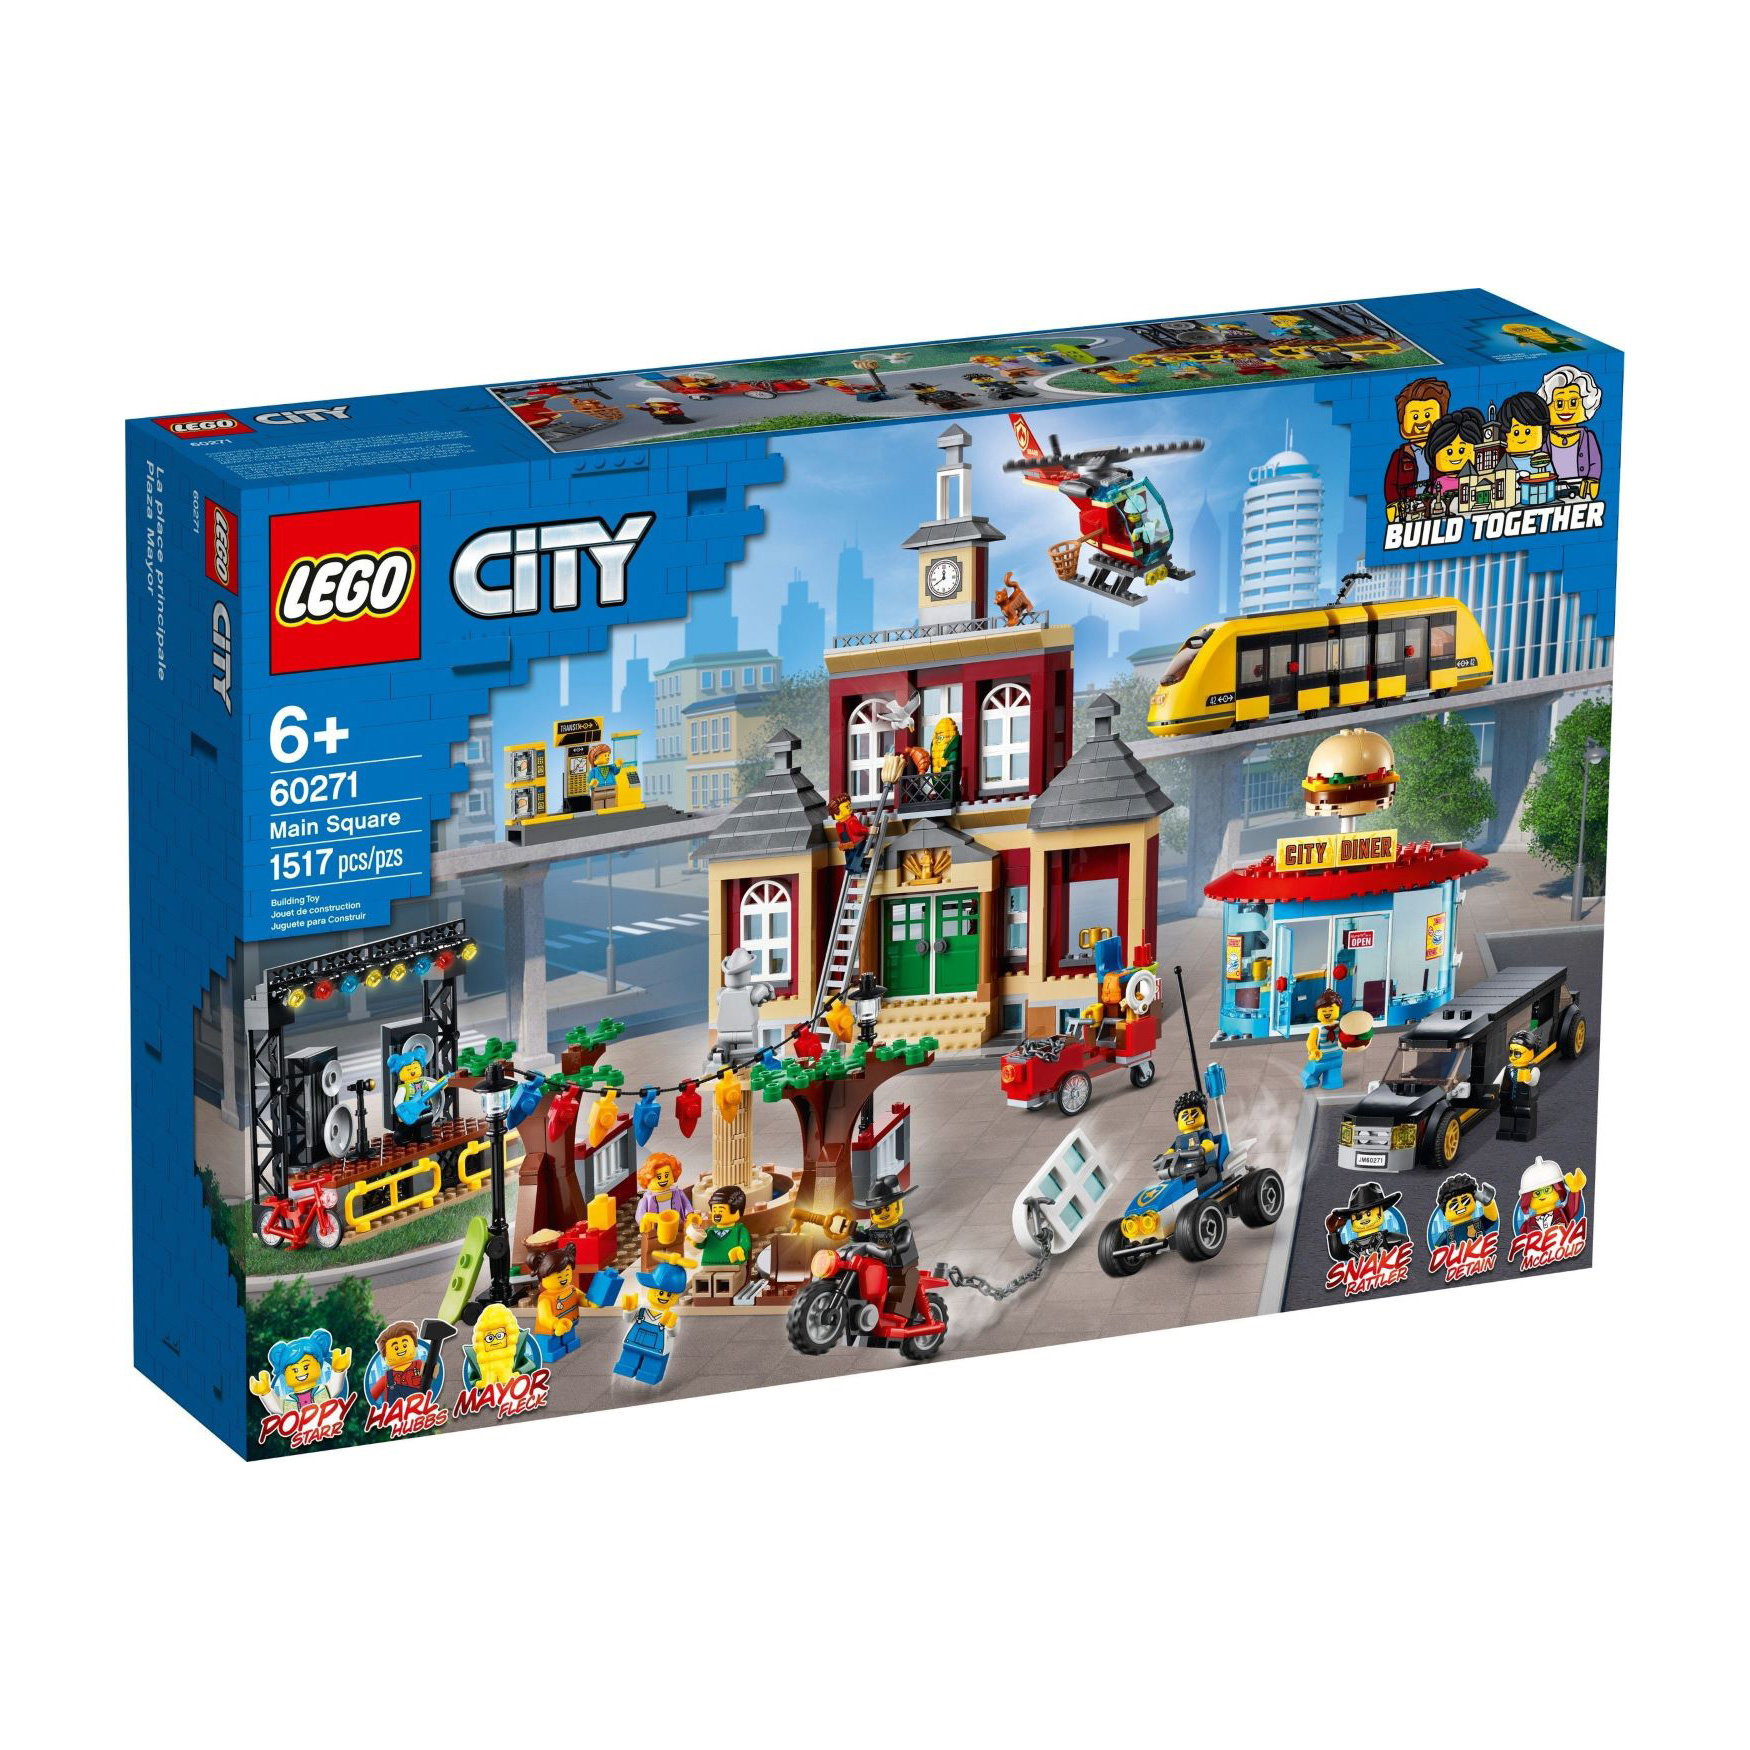 LEGO® CITY 60271 Stadtplatz günstig kaufen | brickstore.at